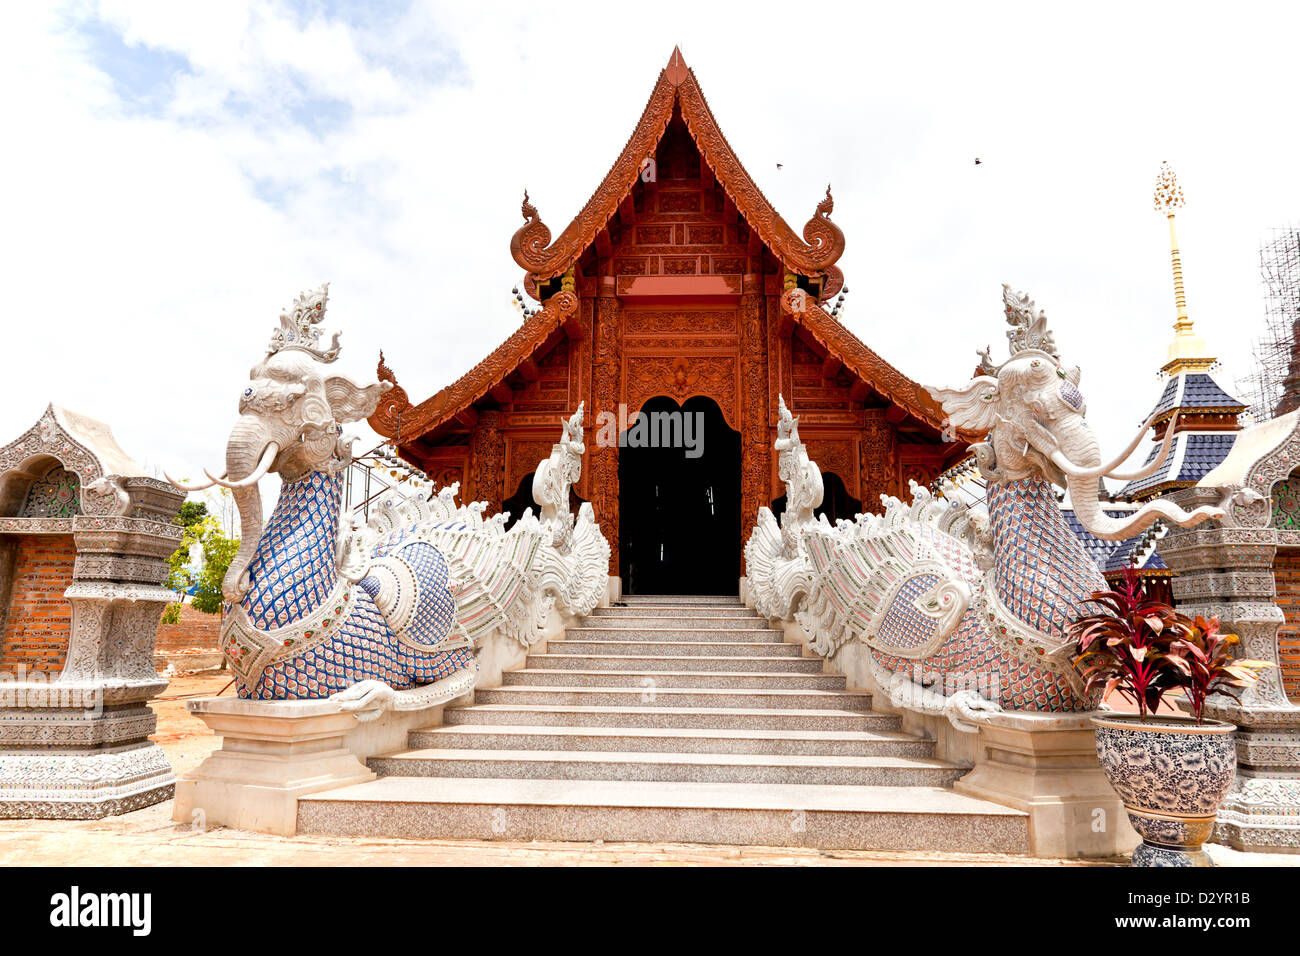 lanna style buddhist temple Stock Photo